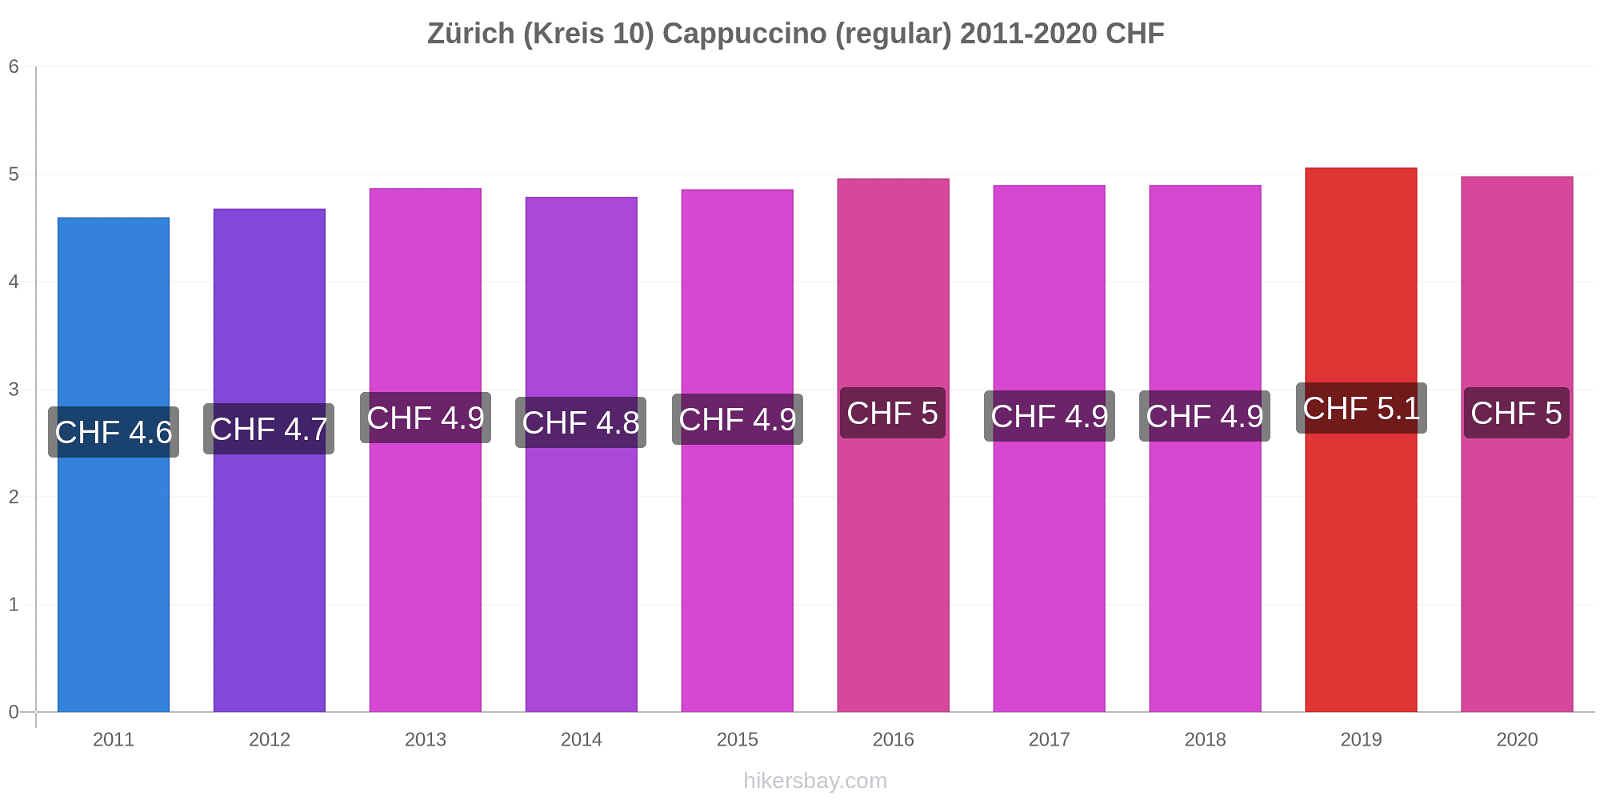 Zürich (Kreis 10) variação de preço Capuccino (regular) hikersbay.com